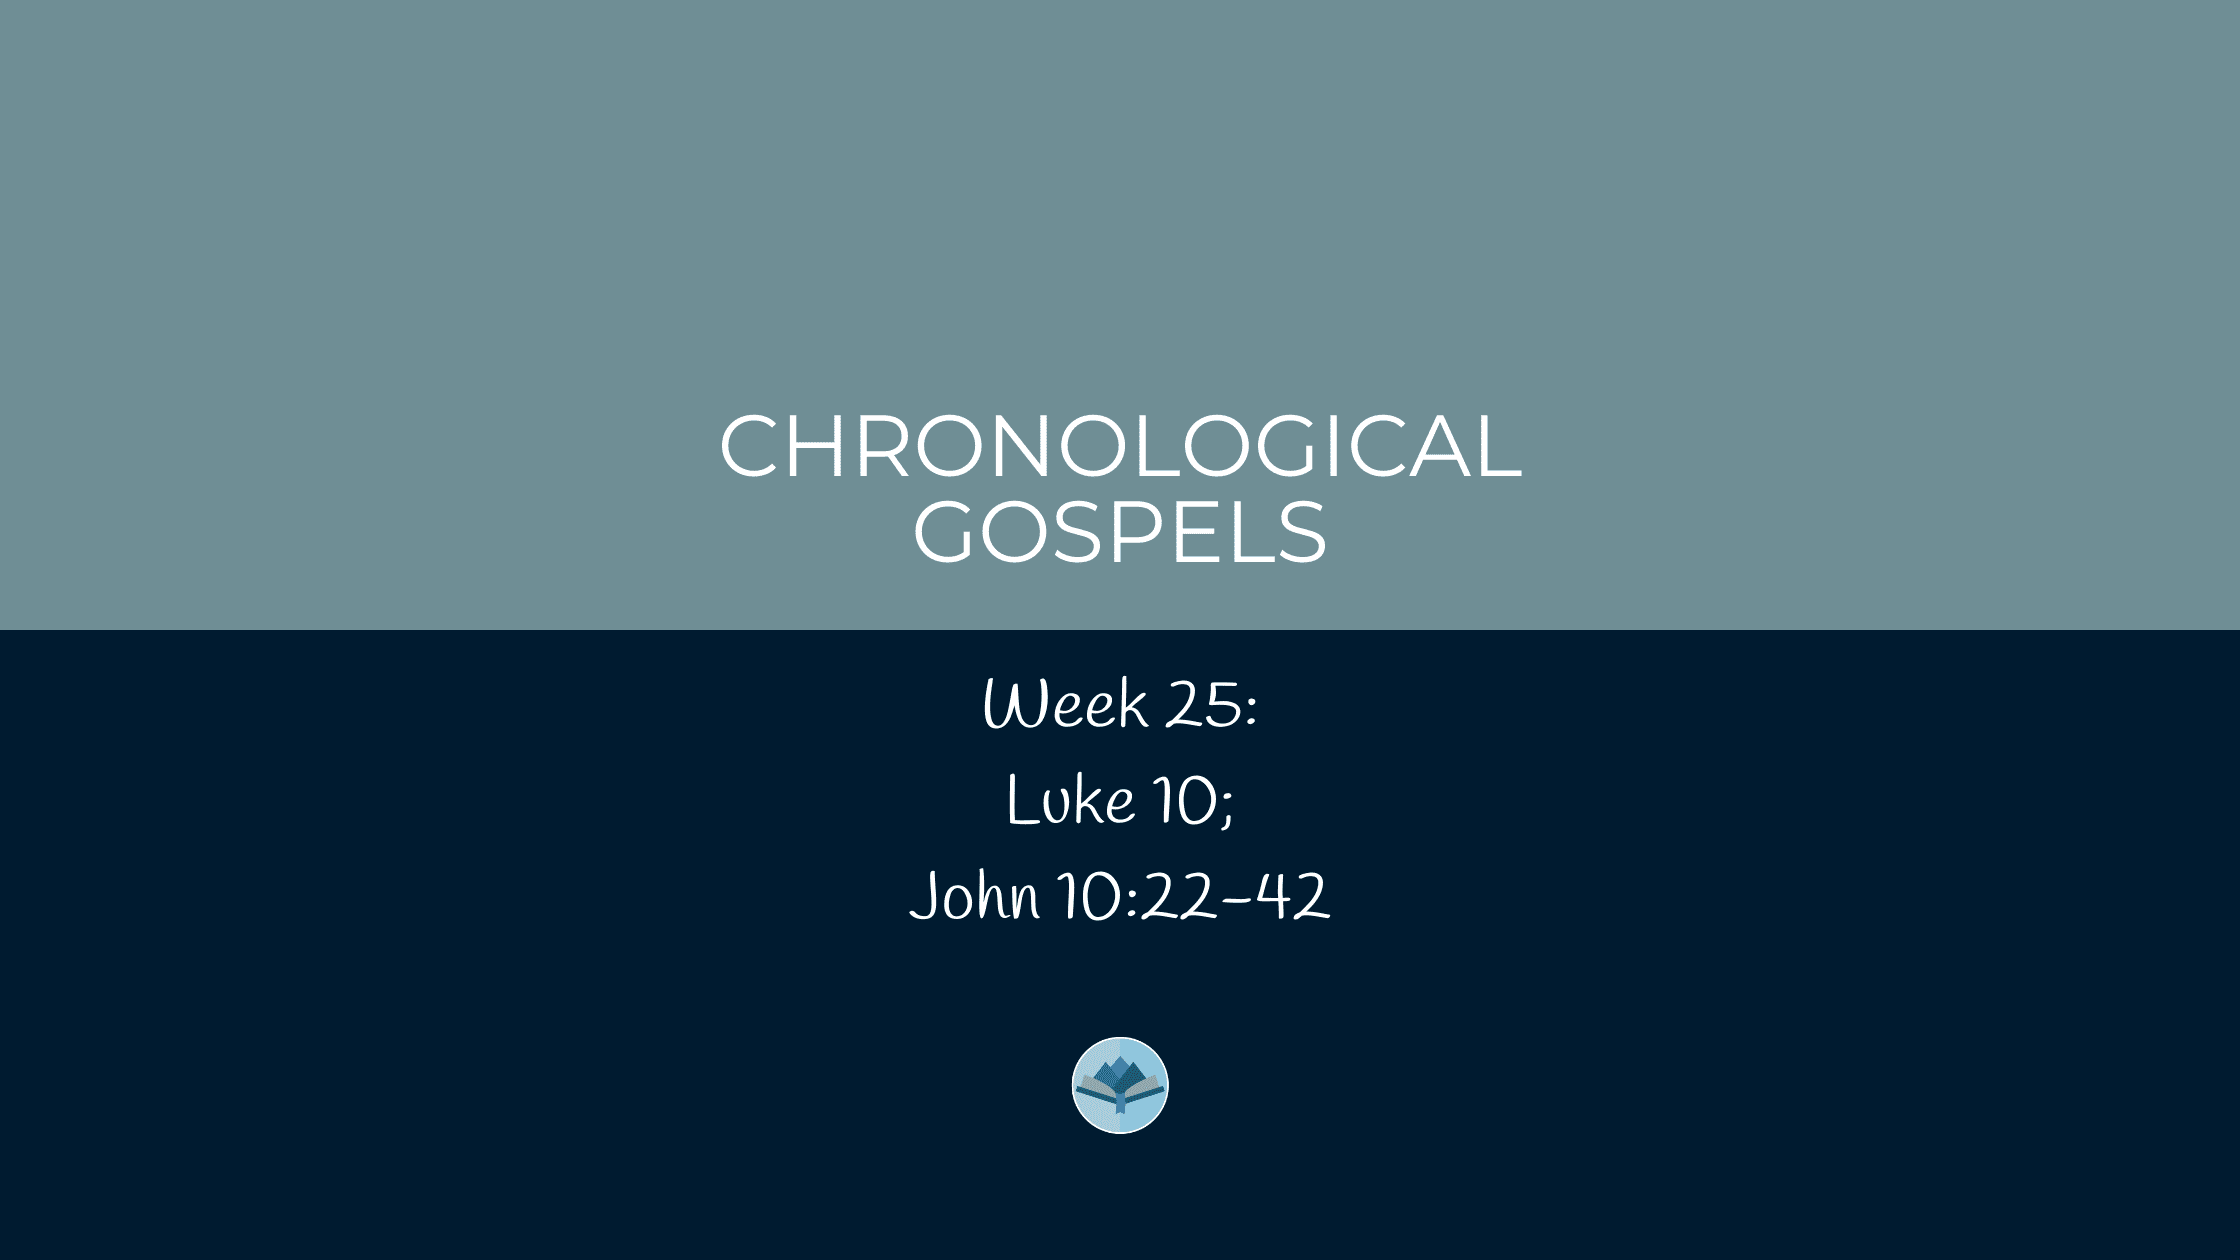 Chronological Gospels: Luke 10; John 10:22-42